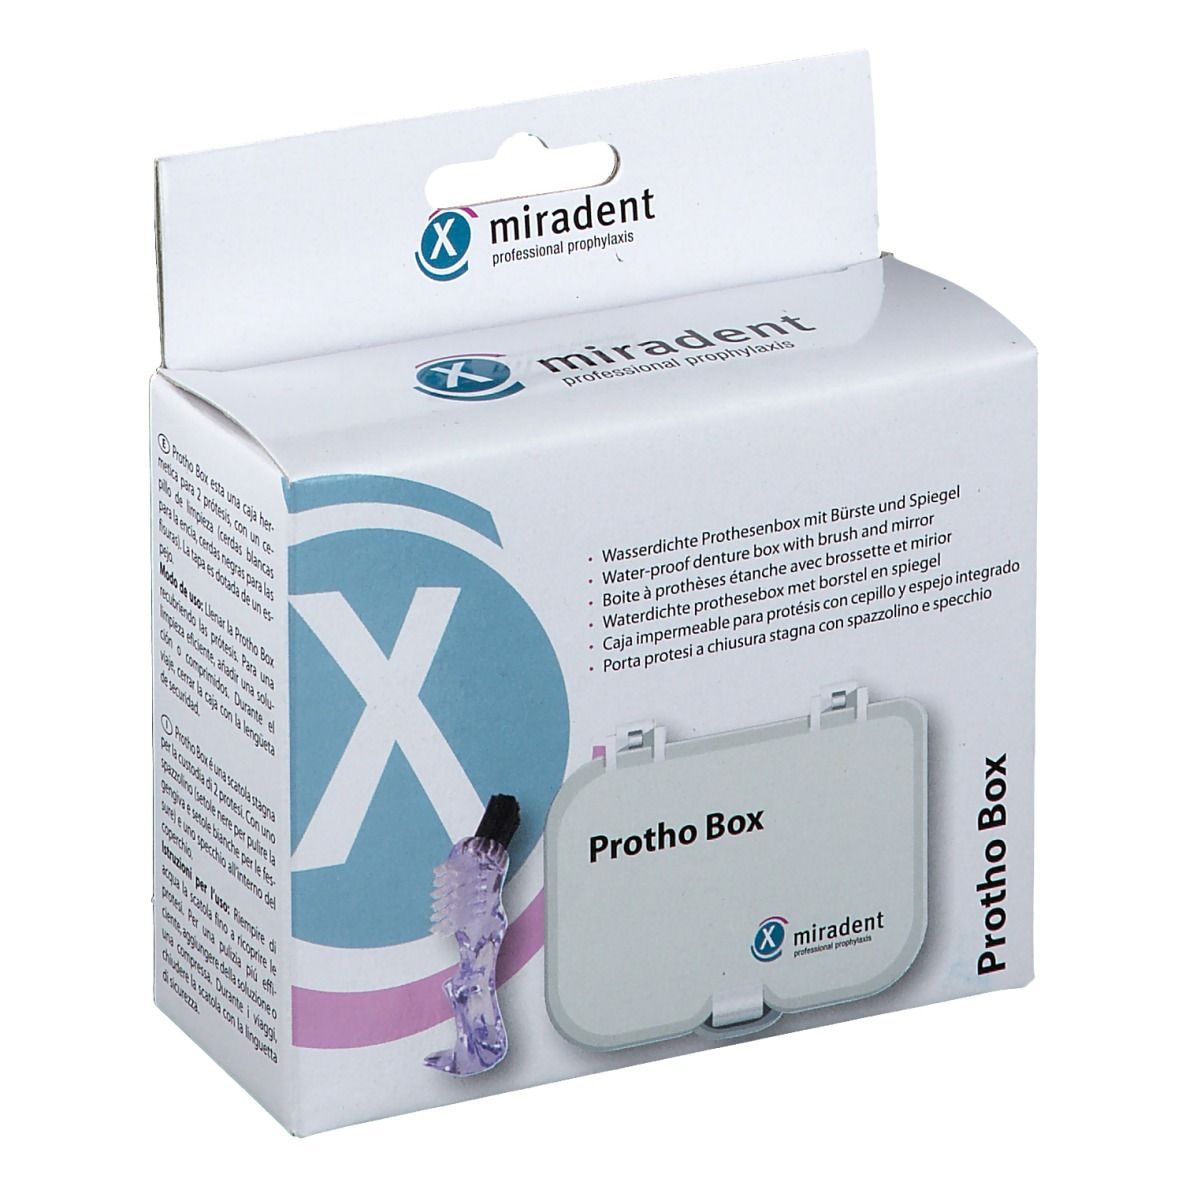 miradent Protho Box®